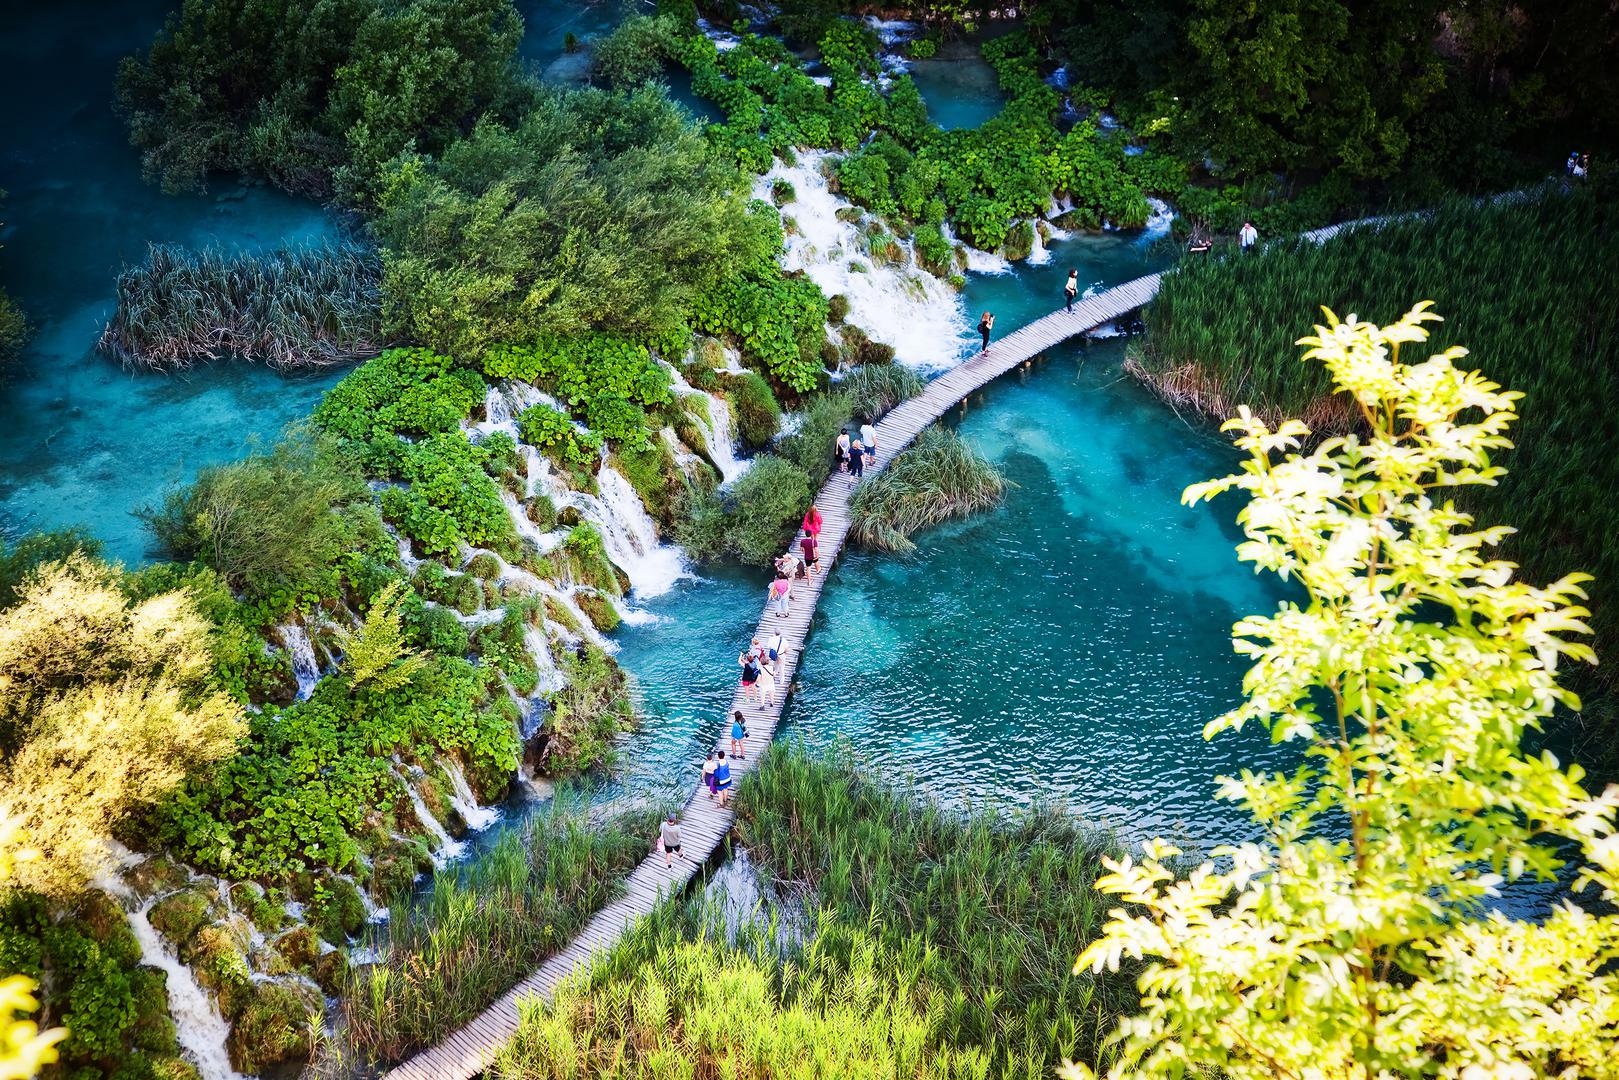 Plitvička jezera: To je najveći, najstariji i najposjećeniji hrvatski nacionalni park. Predstavlja šumovit planinski kraj u kojem se nalazi 16 jezera različite veličine, ispunjenima kristalnom modrozelenom vodom.